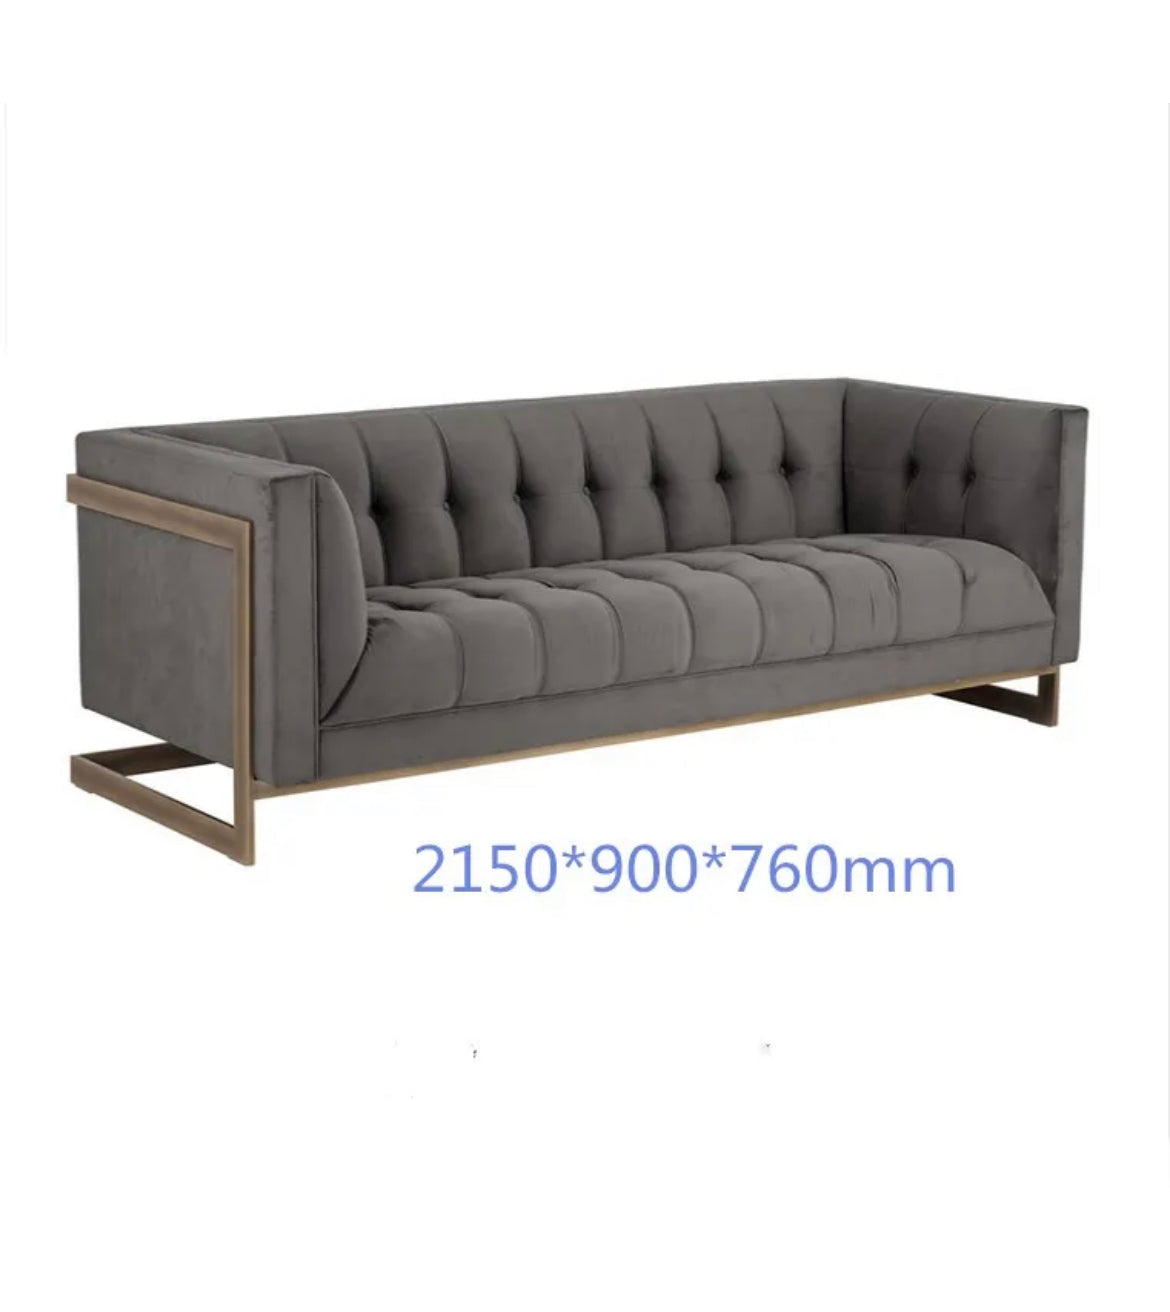 2 Seater Sofa European Style Grey Velvet Living Room Office Sofas